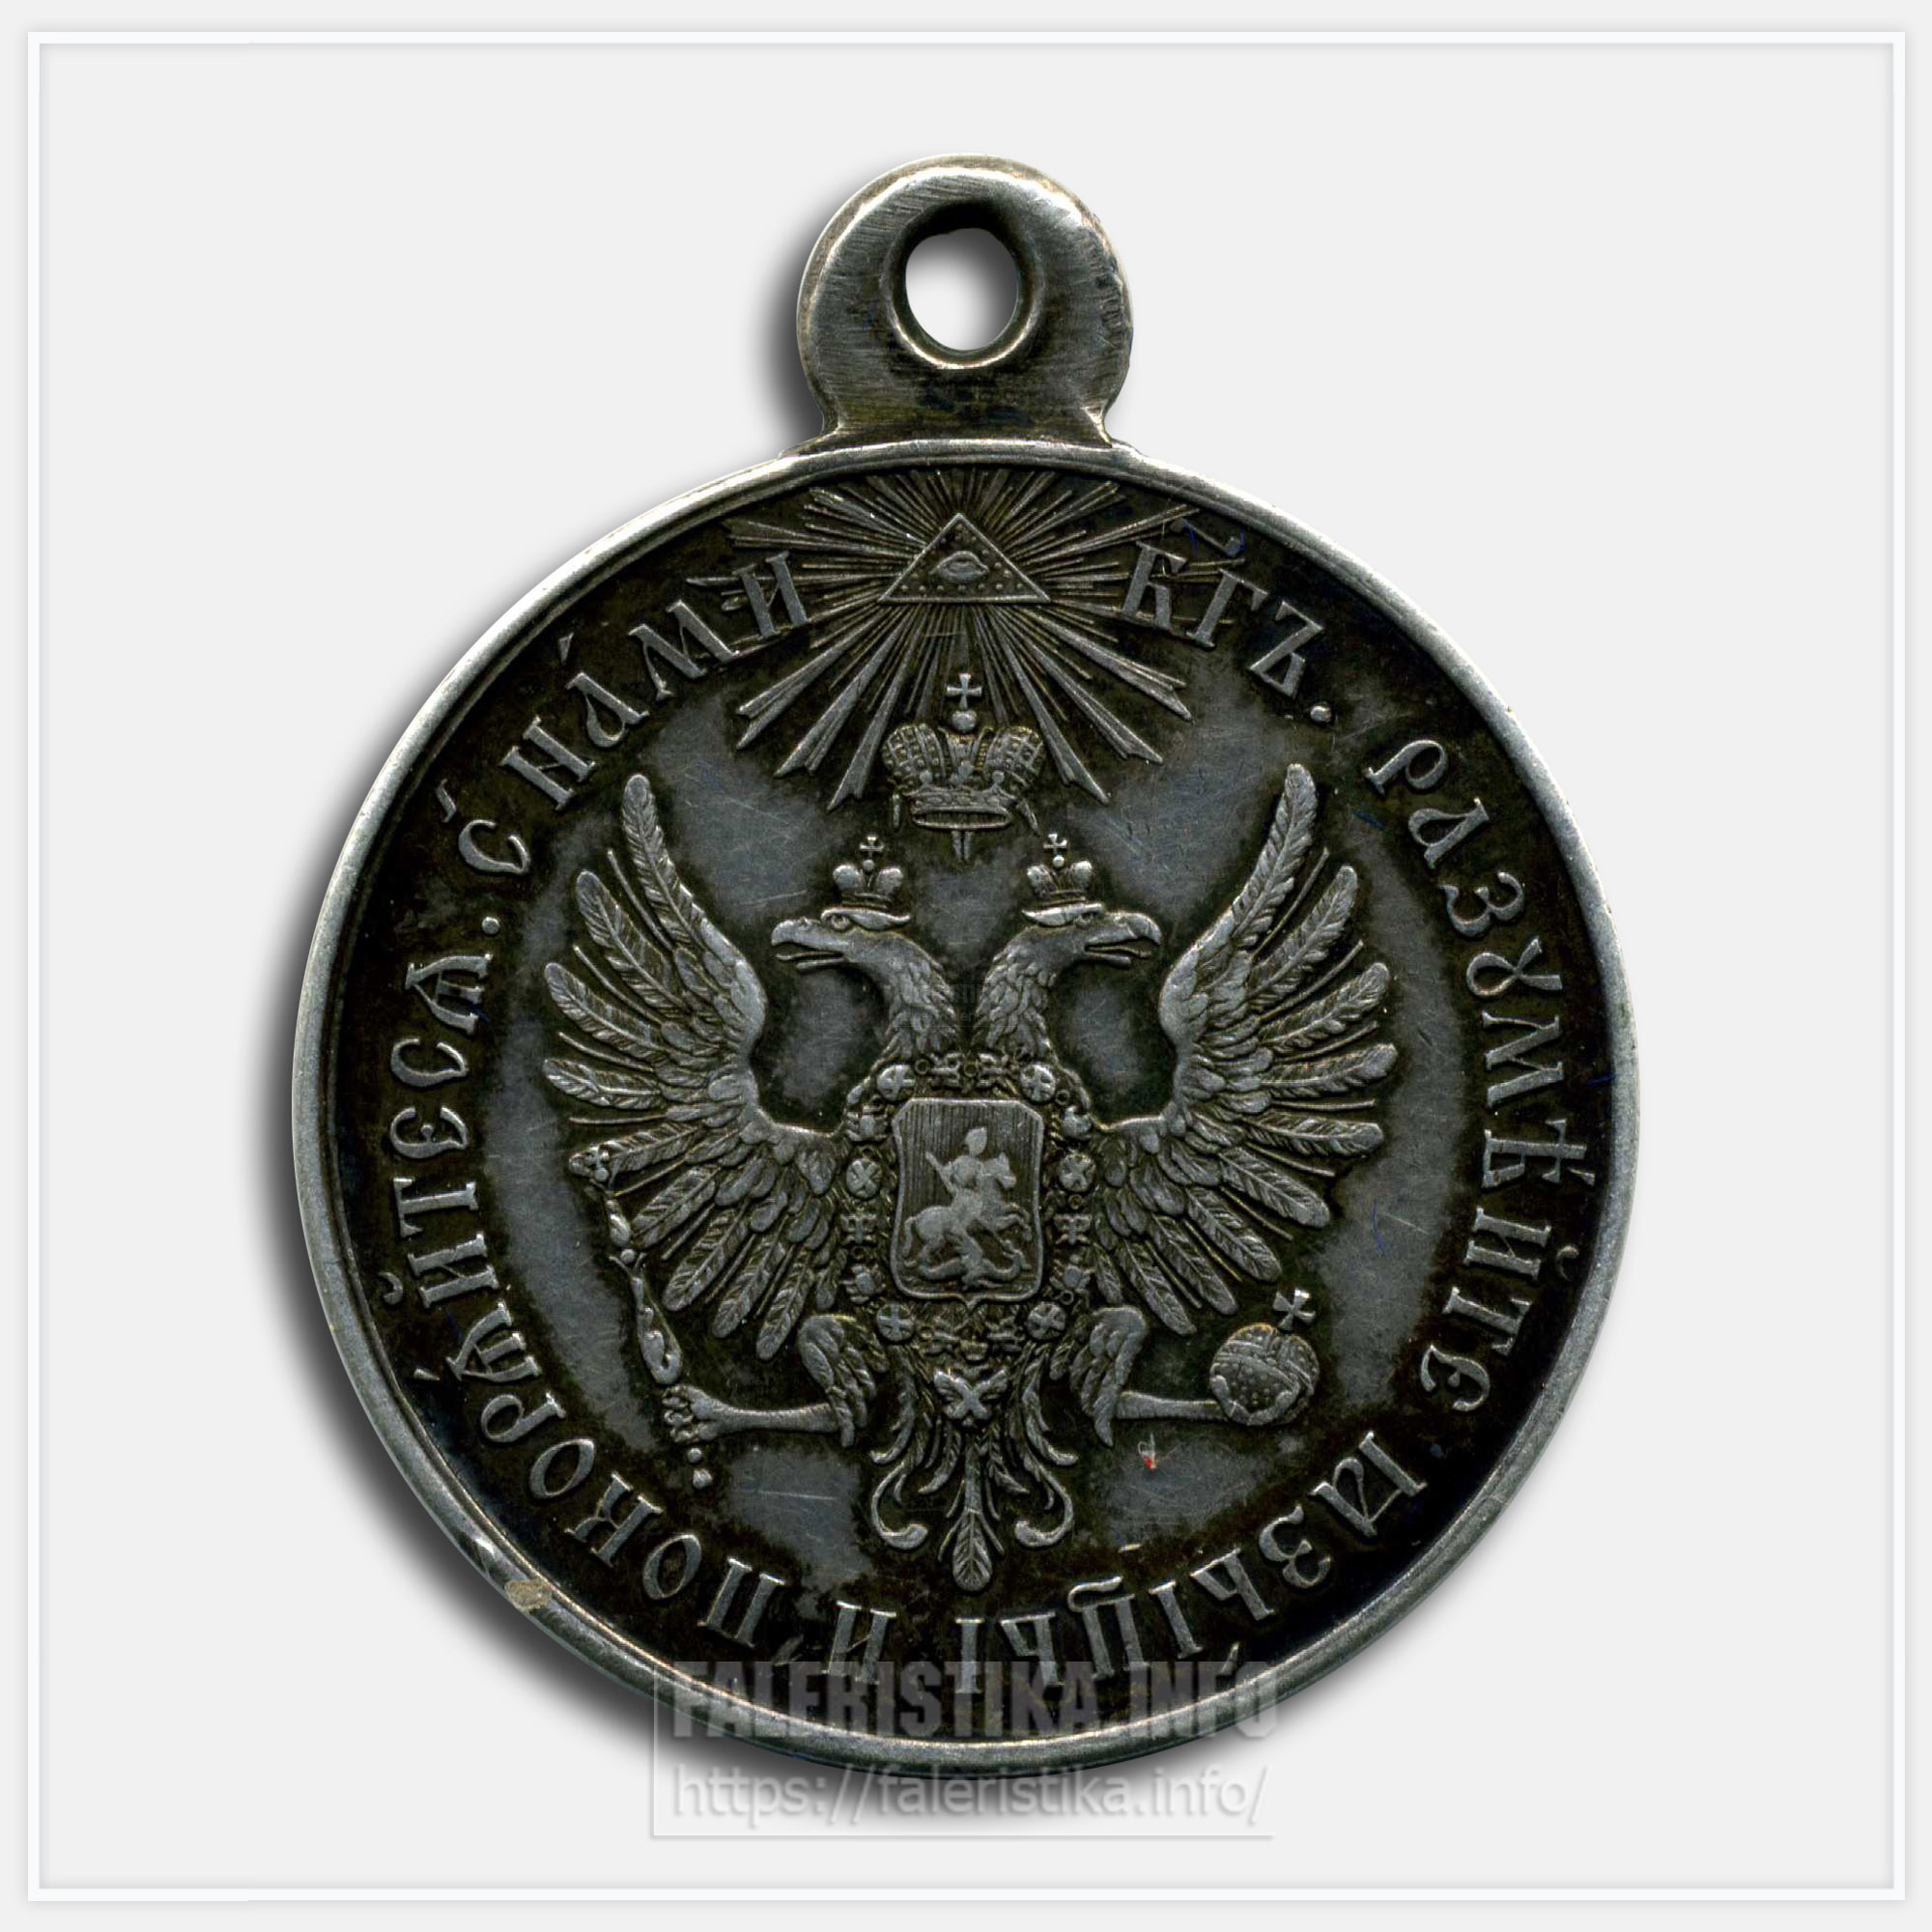 Медаль "За усмирение Венгрии и Трансильвании 1849"